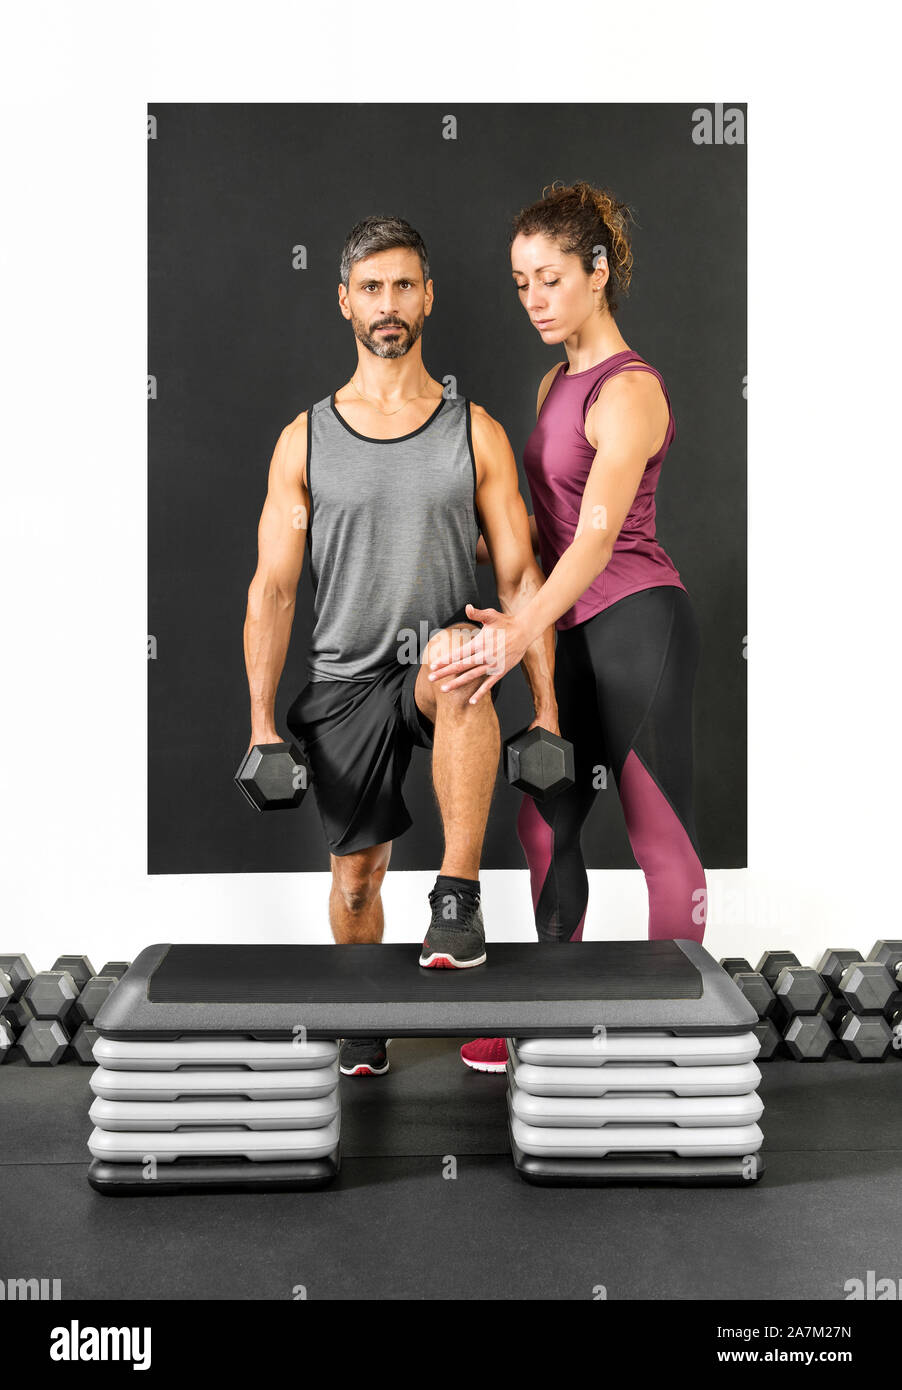 Weibliche personal trainer Unterstützung ein Mann in einer Turnhalle Schritt ups halten zwei kurzhantel Gewichte in einer Gesundheit und Fitness Concept zu tun Stockfoto